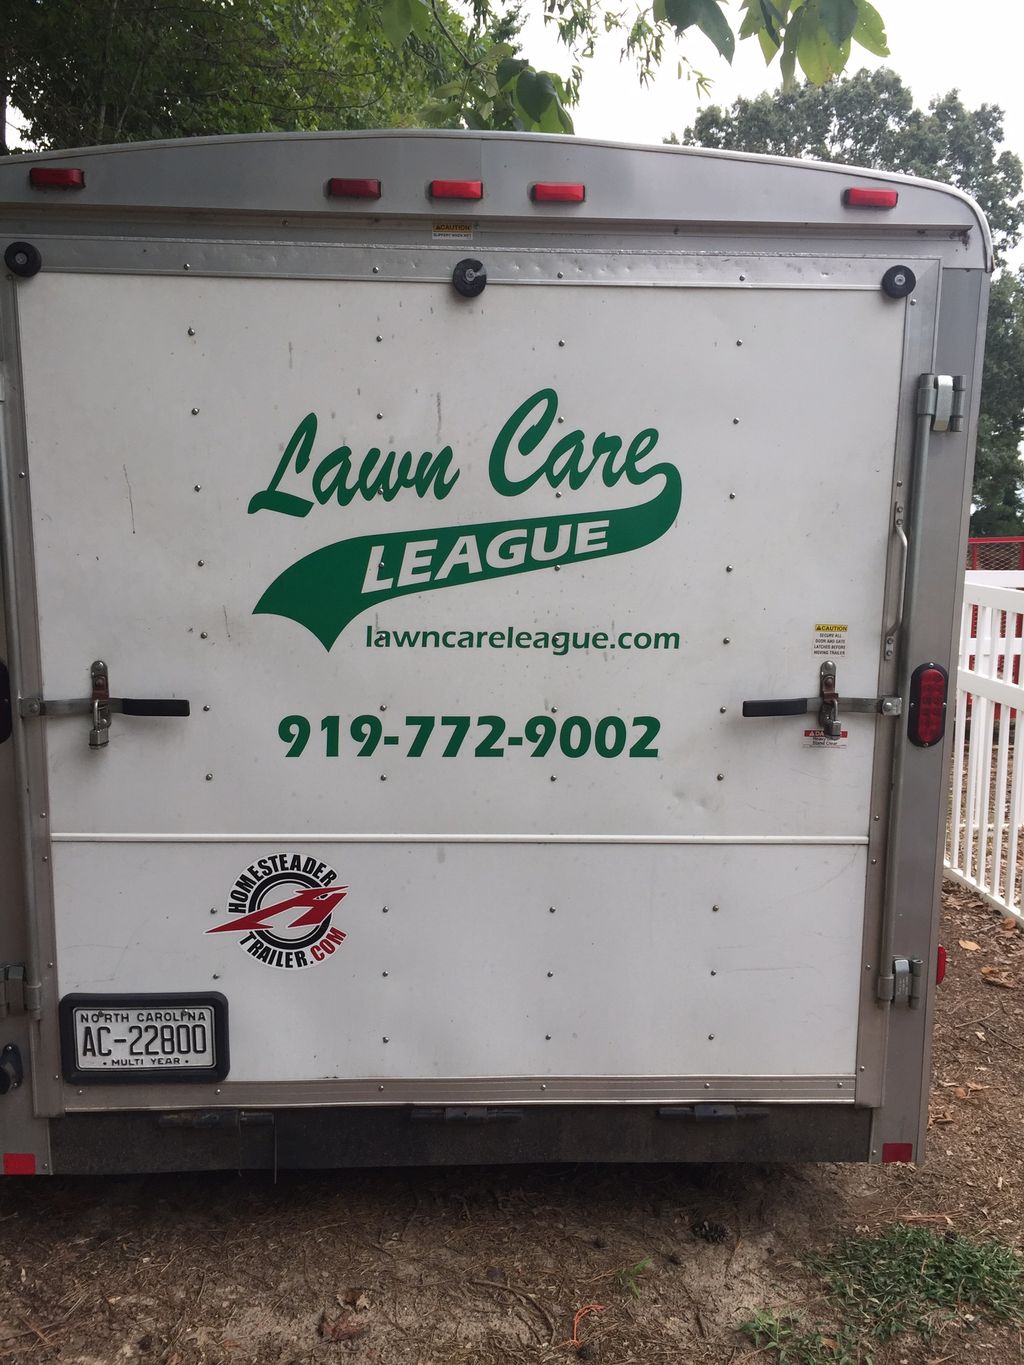 Lawn care league